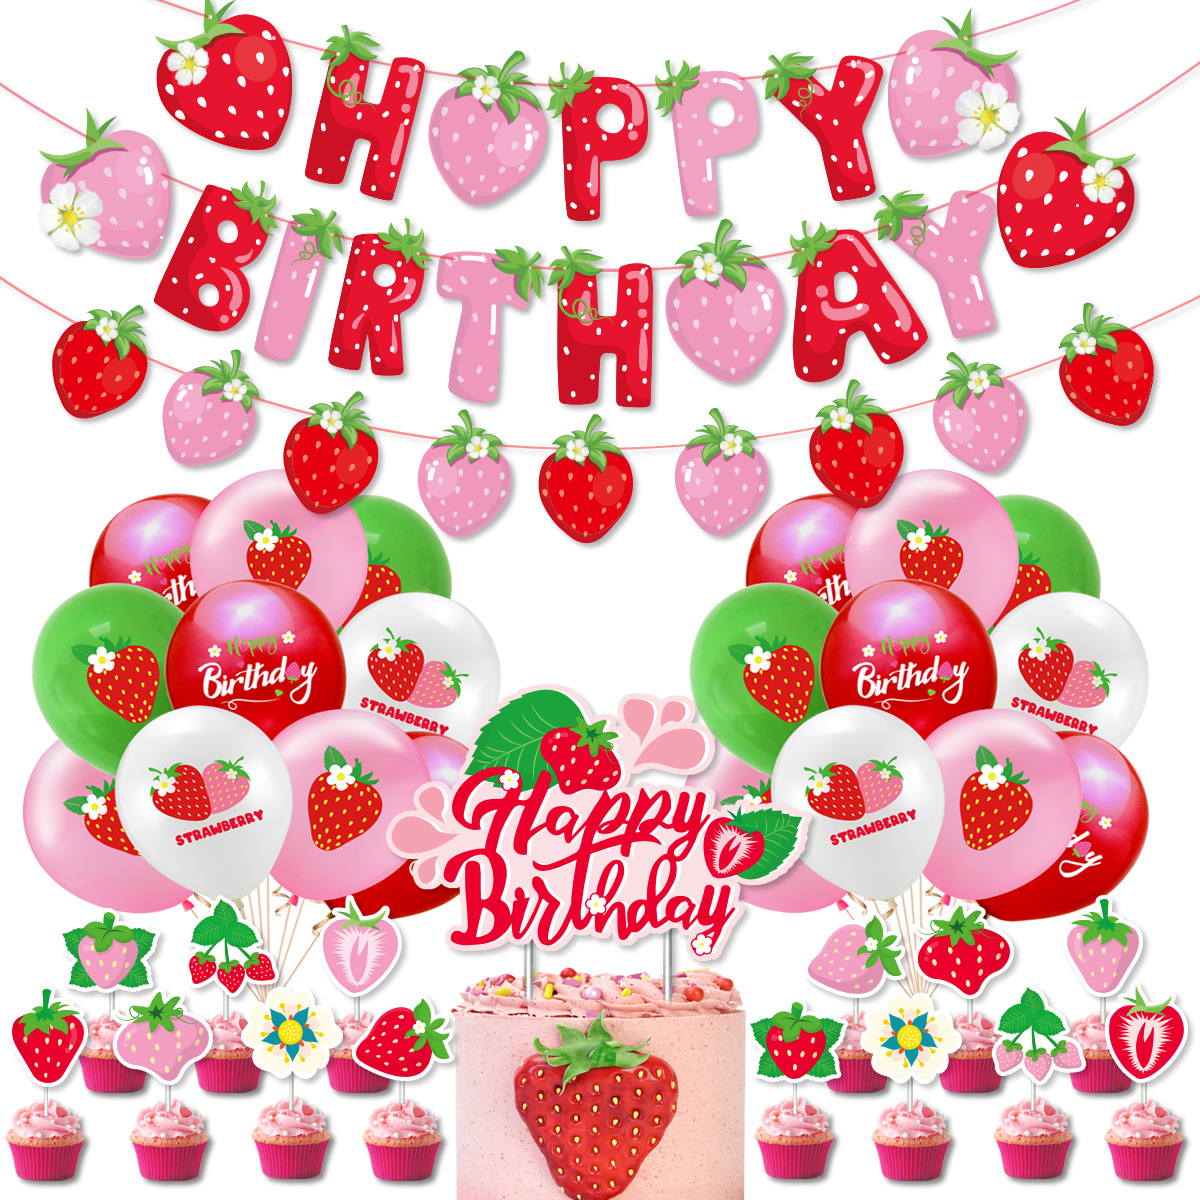 新品水果草莓主题生日派对装饰 草莓拉旗蛋糕插牌气球套装布置